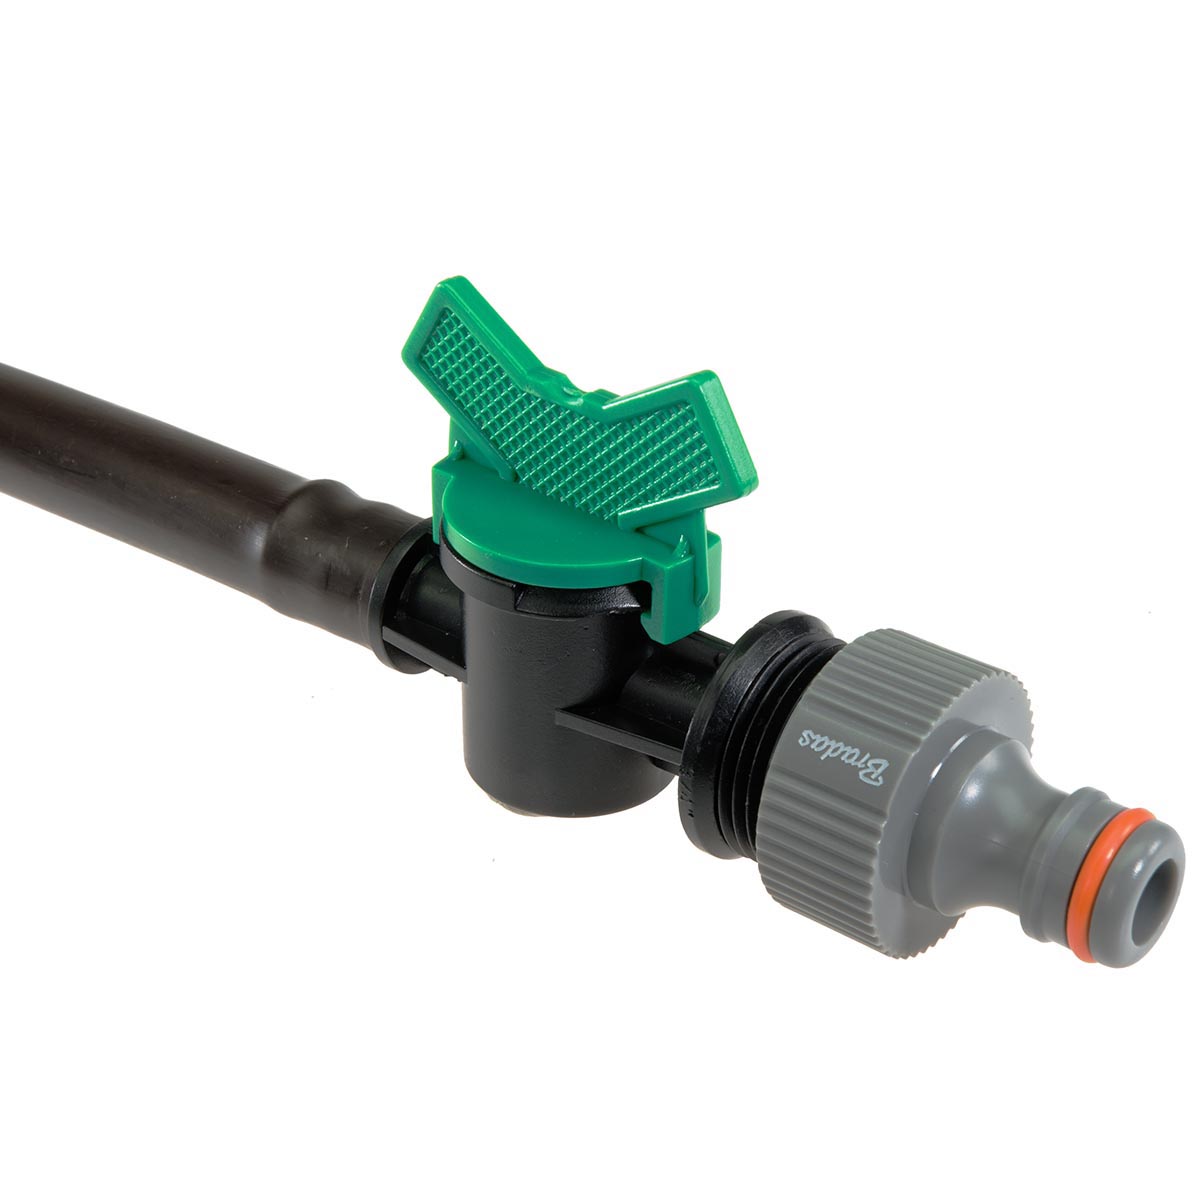 Valvola di regolazione 16 mm x 3/4" valvola per tubo flessibile Connettore per tubo da giardino 1 pz.